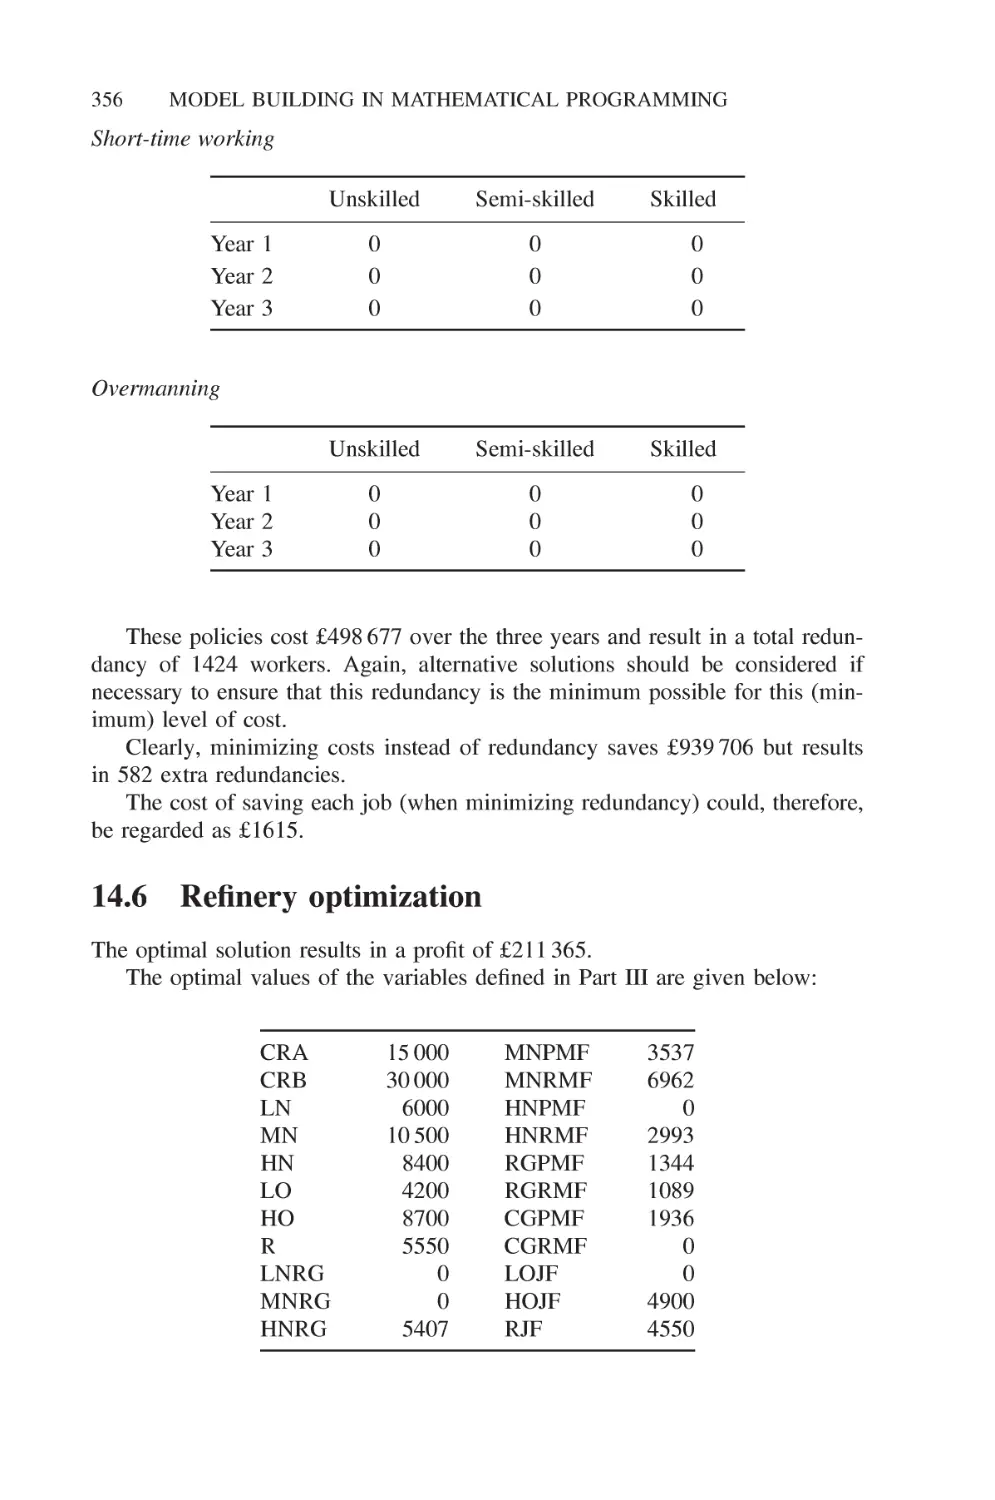 14.6 Refinery optimization